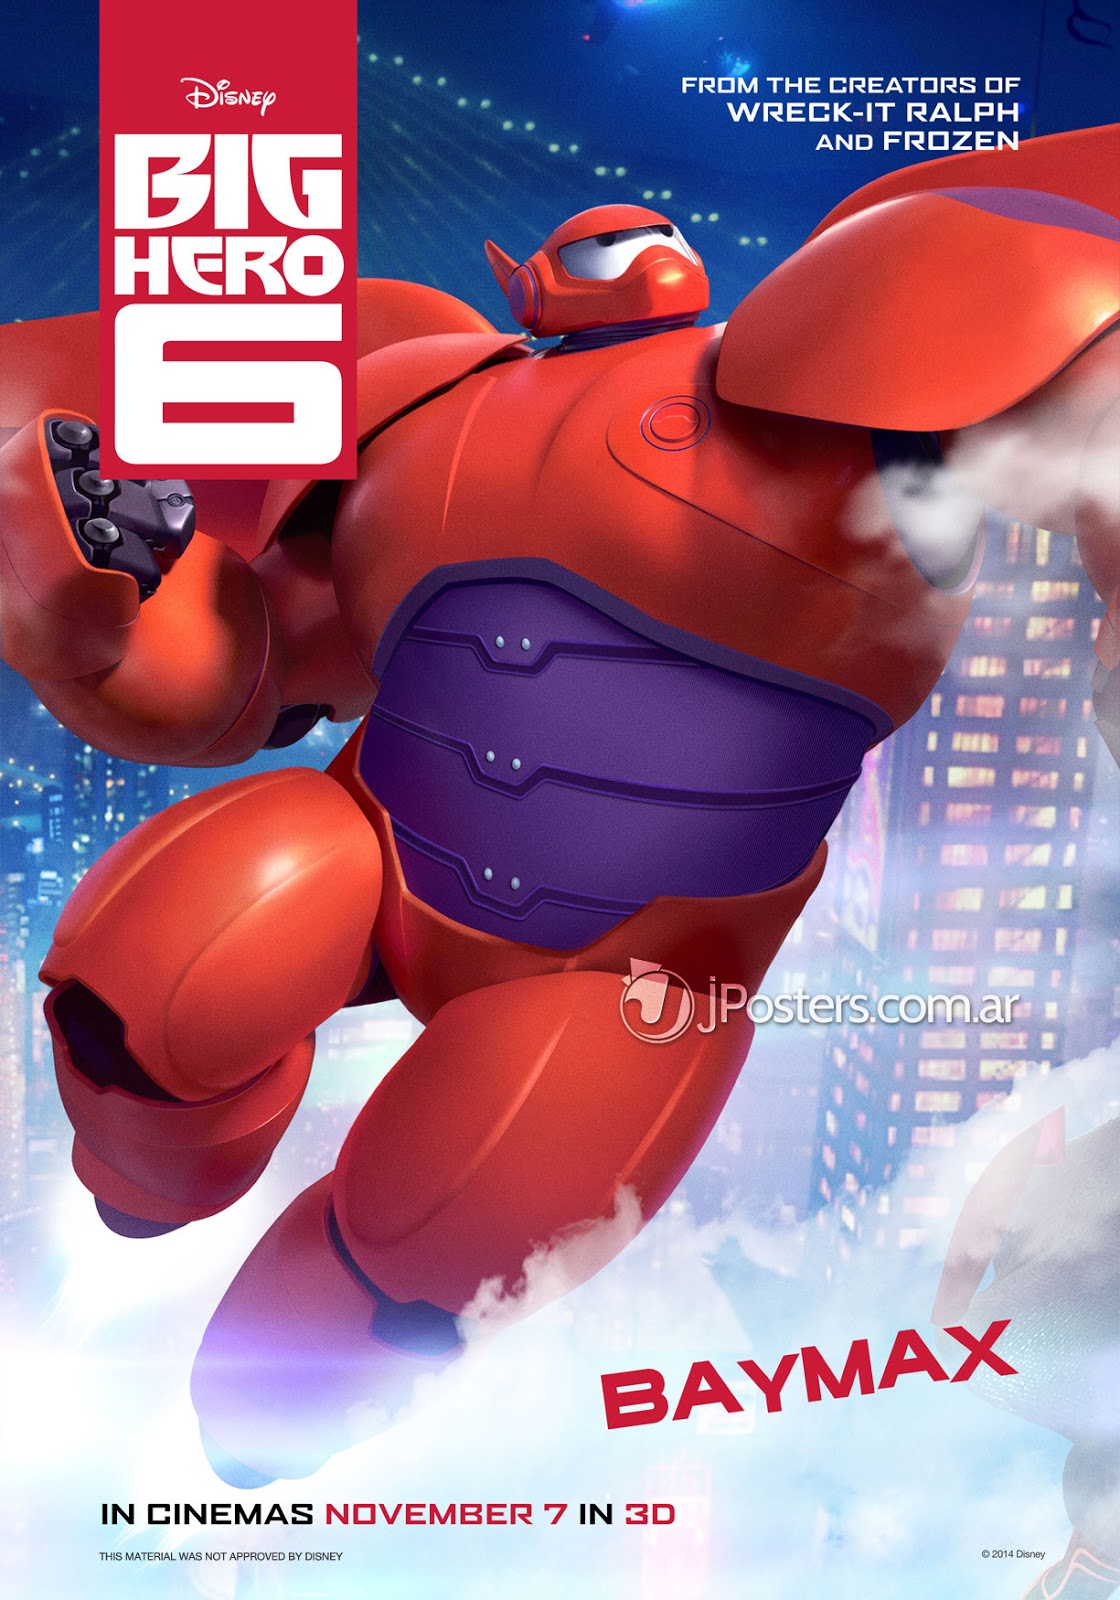 ベイマックス Big Hero 6 壁紙 画像あつめてみた ベイマックス Big Hero 6 壁紙 画像あつめてみた Naver まとめ